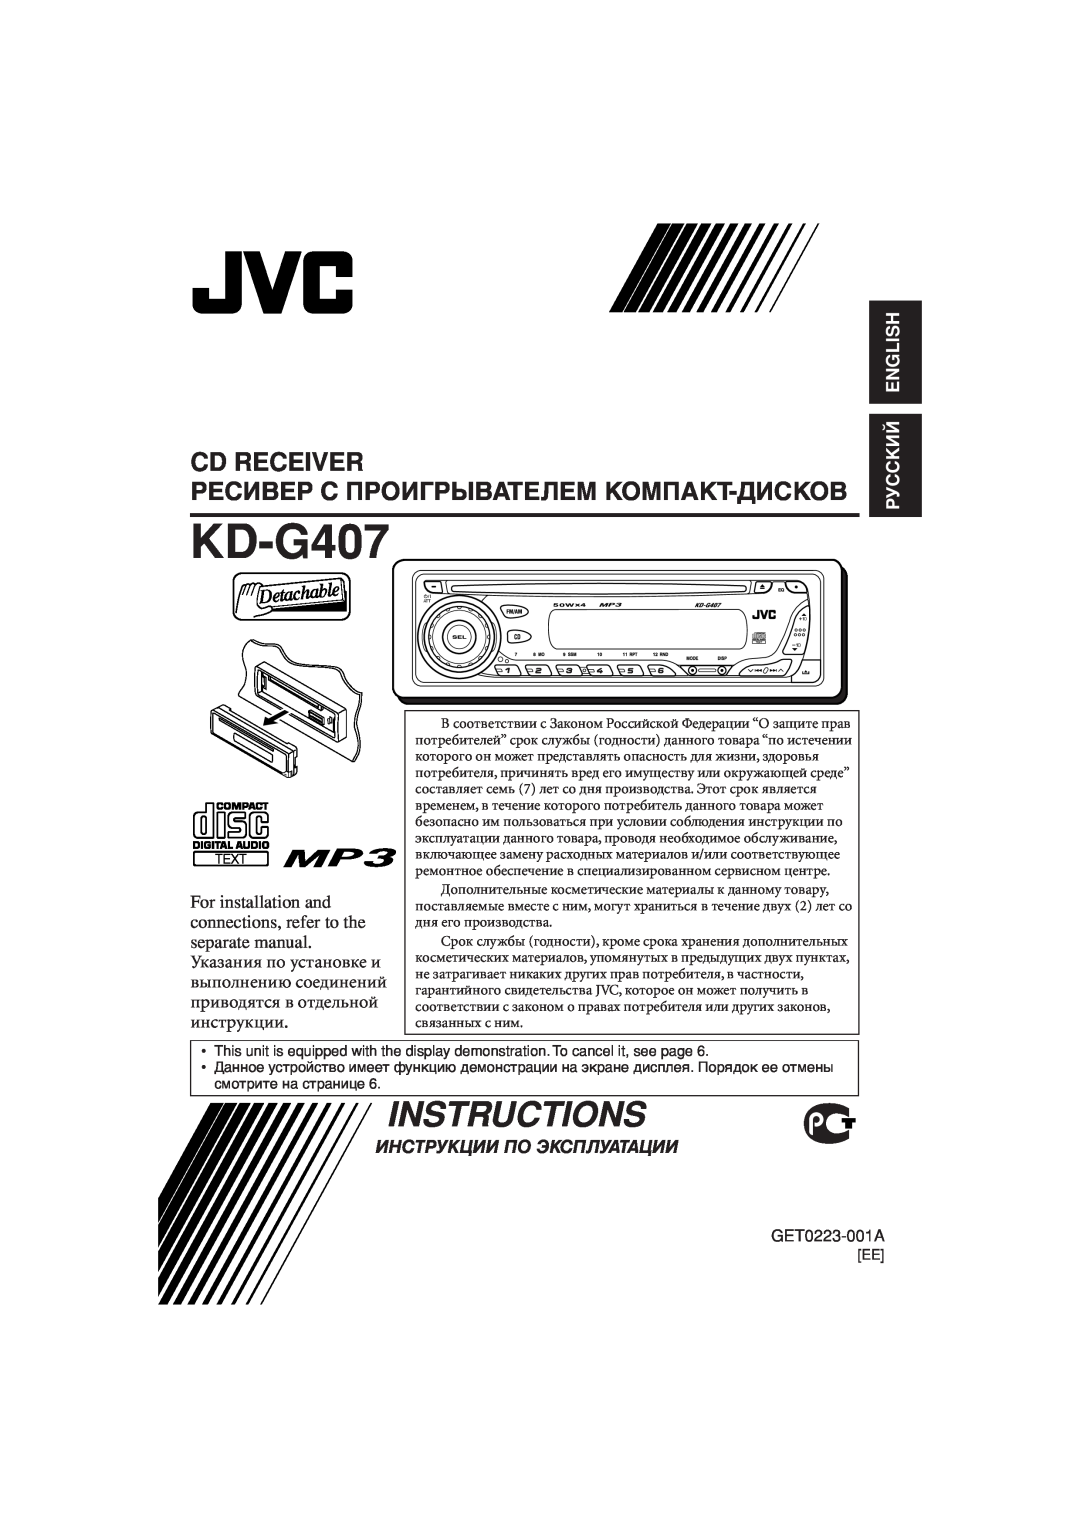 JVC KD-G407 manual Cd Receiver, Инструкции По Эксплуатации, Instructions, Ресивер С Проигрывателем Компакт-Дисков 